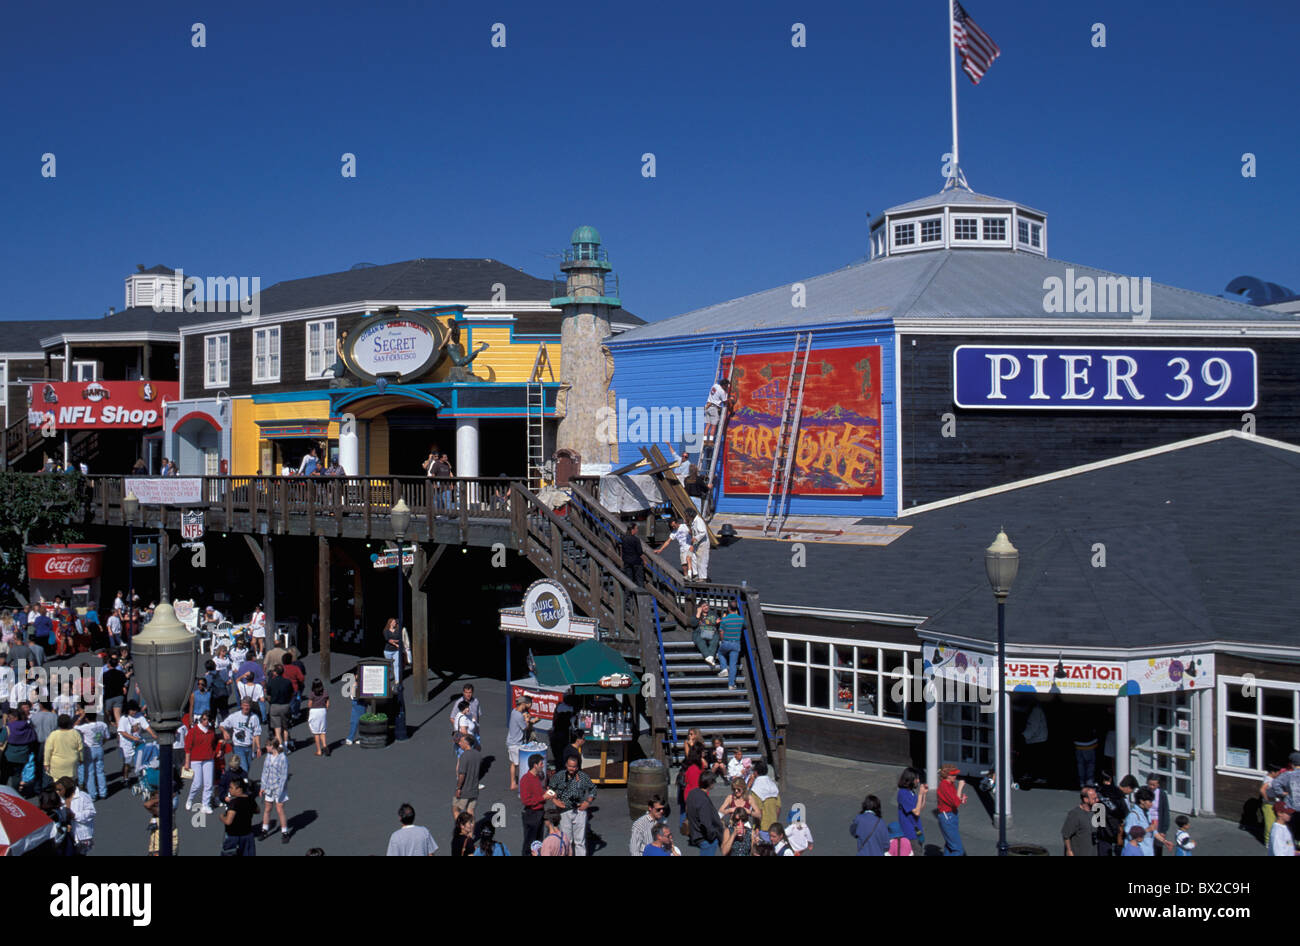 Jett Pier 39 speichert Geschäfte Umgang Menschen San Francisco Kalifornien USA Vereinigte Staaten Stockfoto